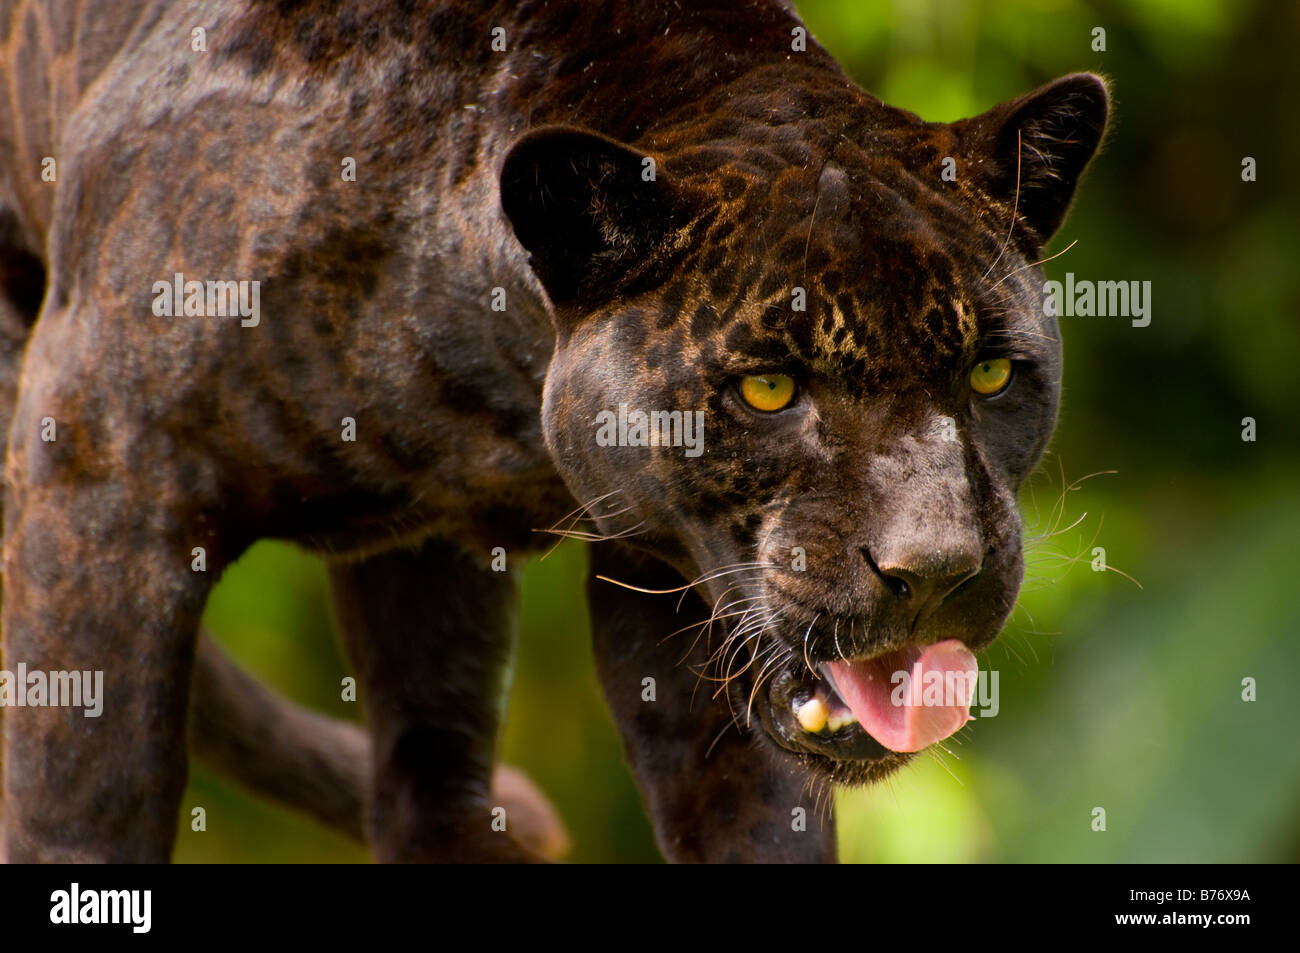 Panther or black jaguar Panthera onca Stock Photo